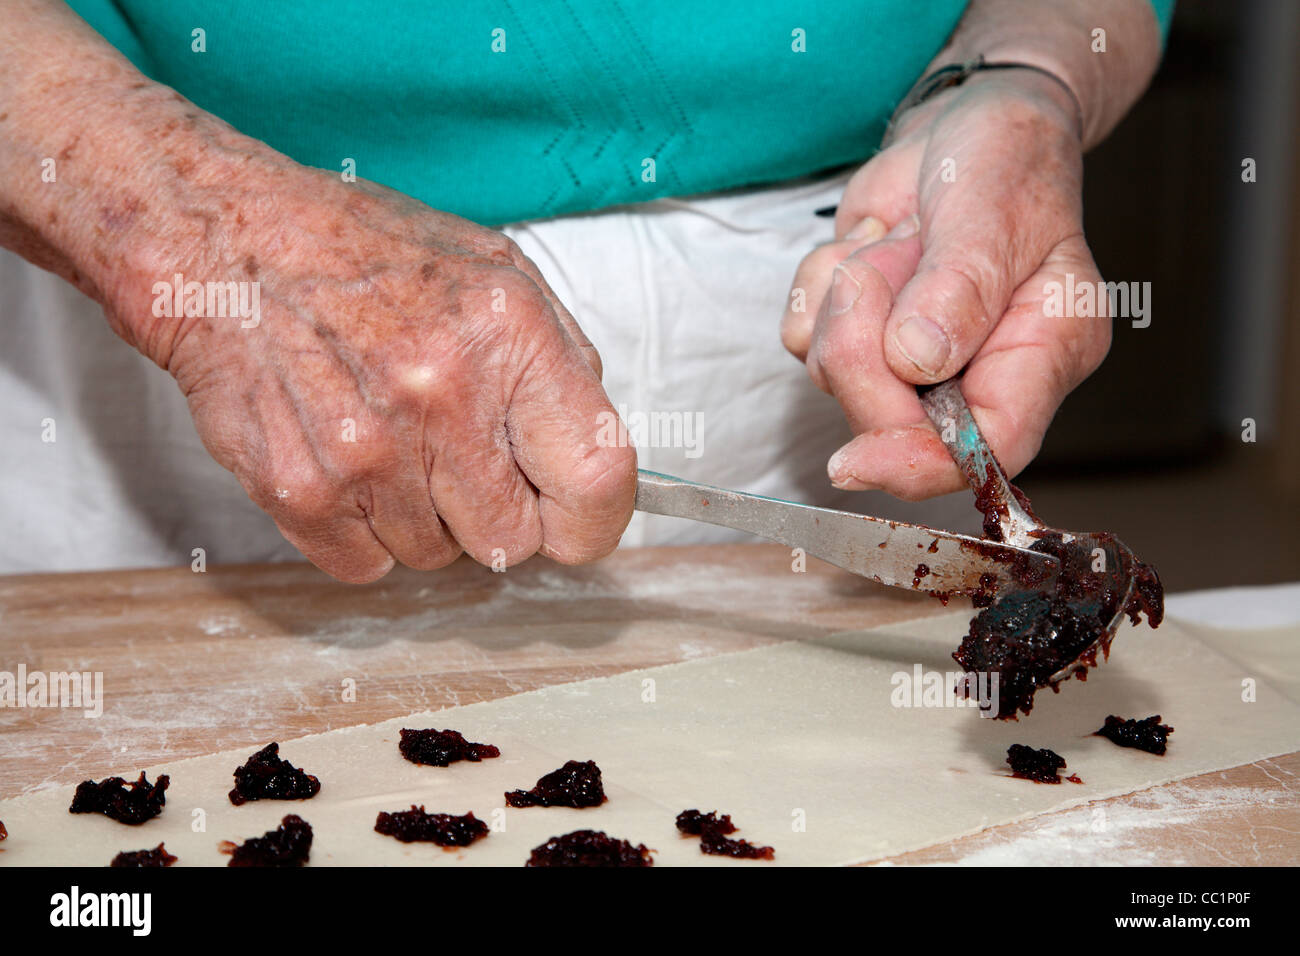 Grand-mère mains à la cuisson Banque D'Images